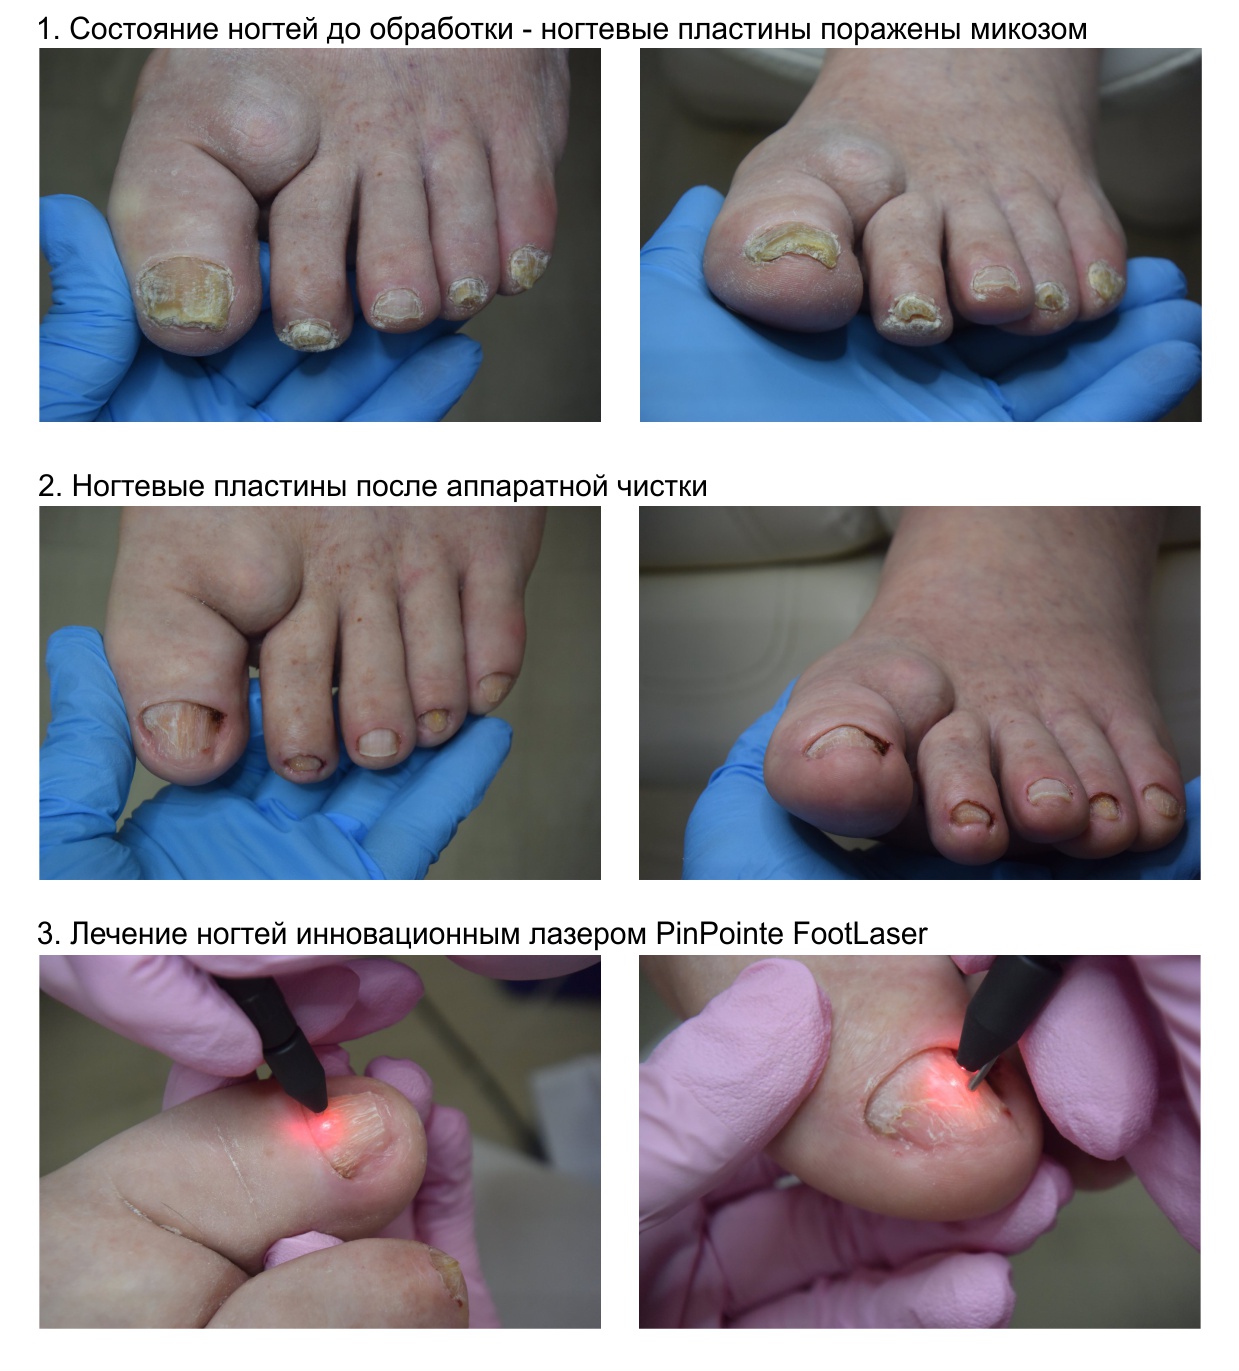 Случай лечения микоза стоп и ногтей на фоне подагры.jpg